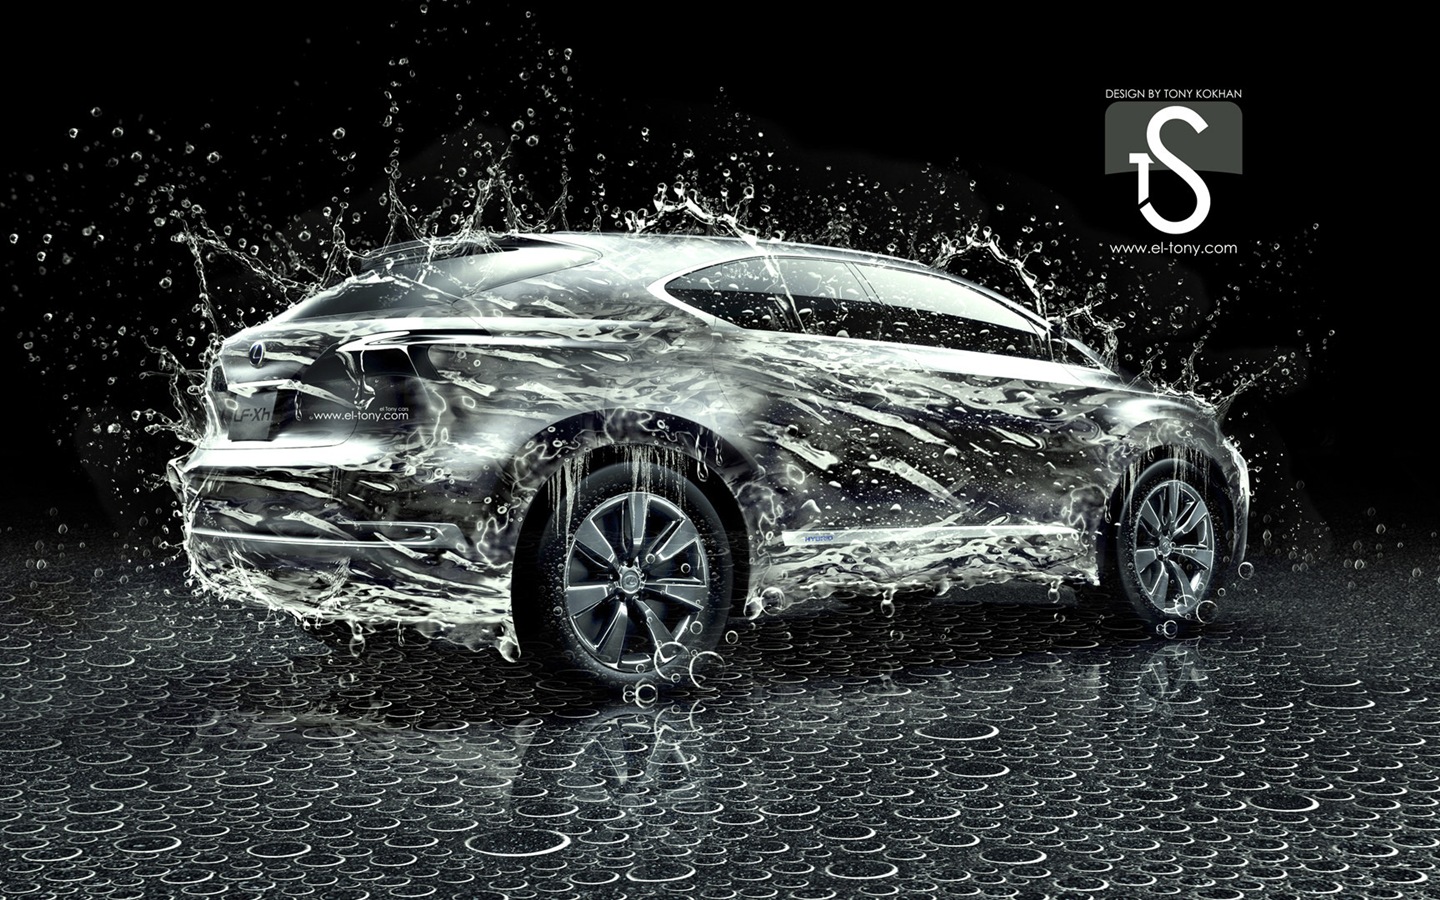 물 방울 스플래시, 아름다운 차 크리 에이 티브 디자인 배경 화면 #8 - 1440x900